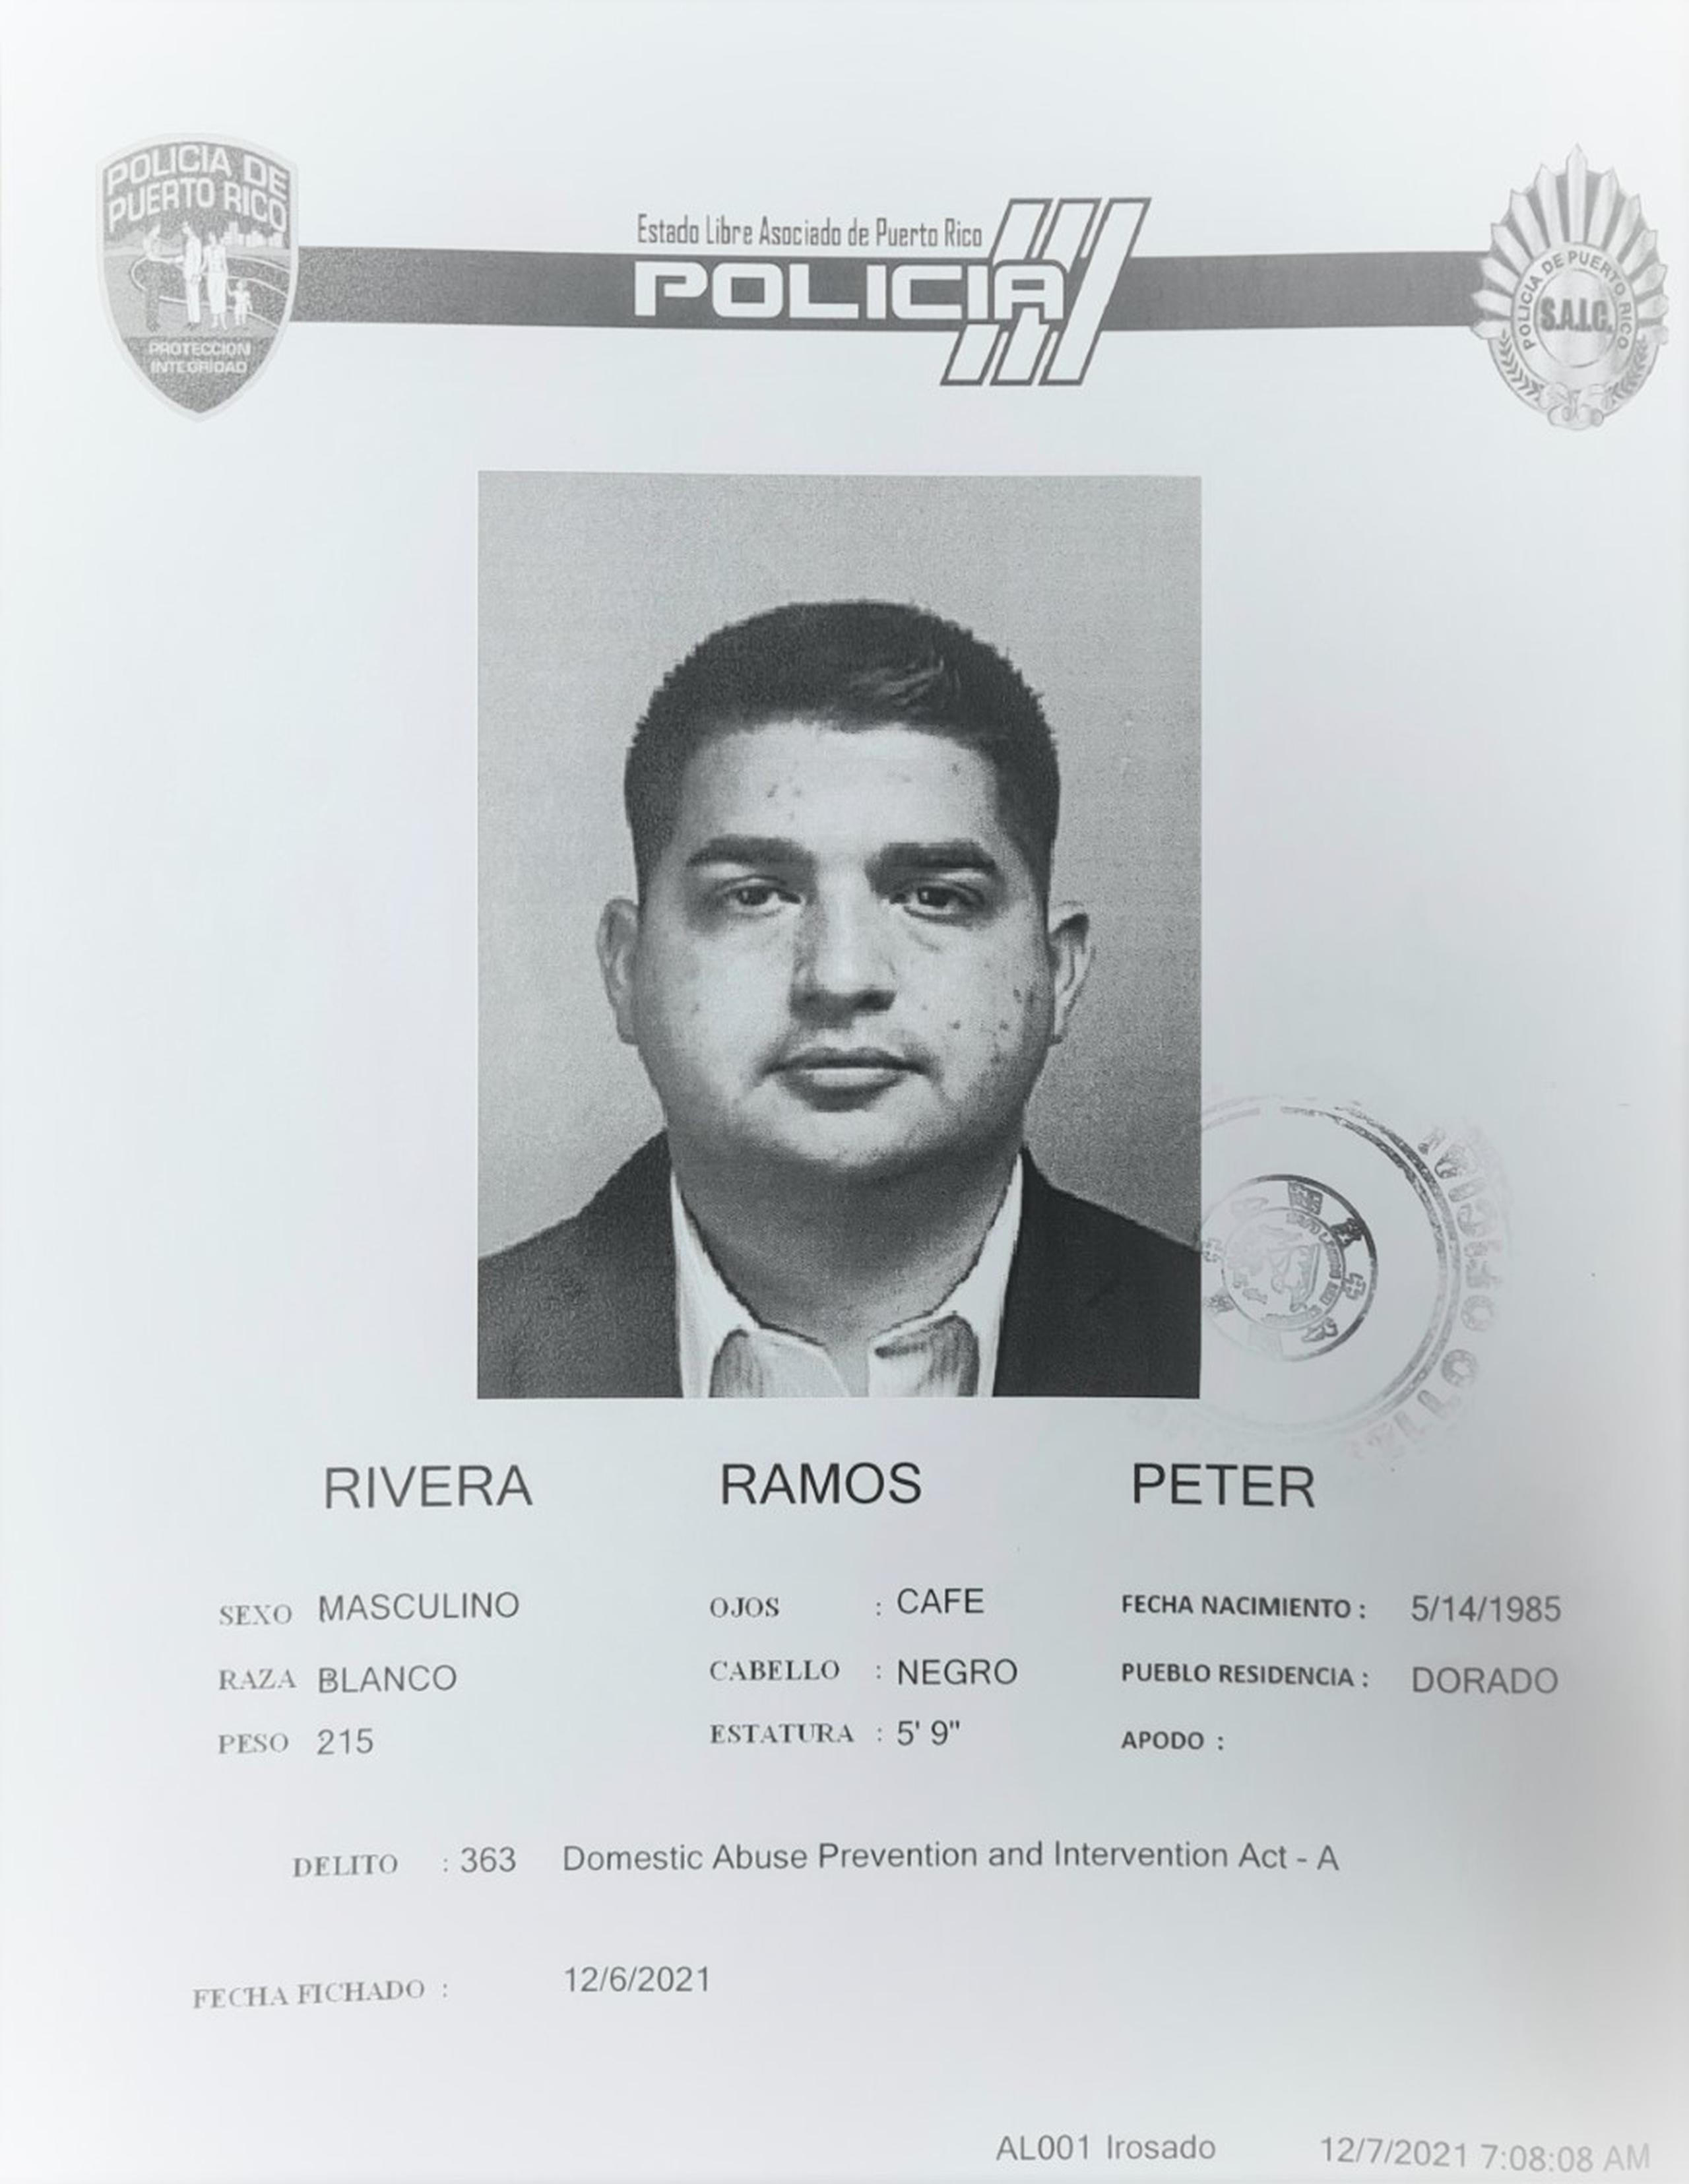 Peter Rivera Ramos fue acusado por violencia doméstica y maltrato de menores por hechos ocurridos en su residencia en Dorado.